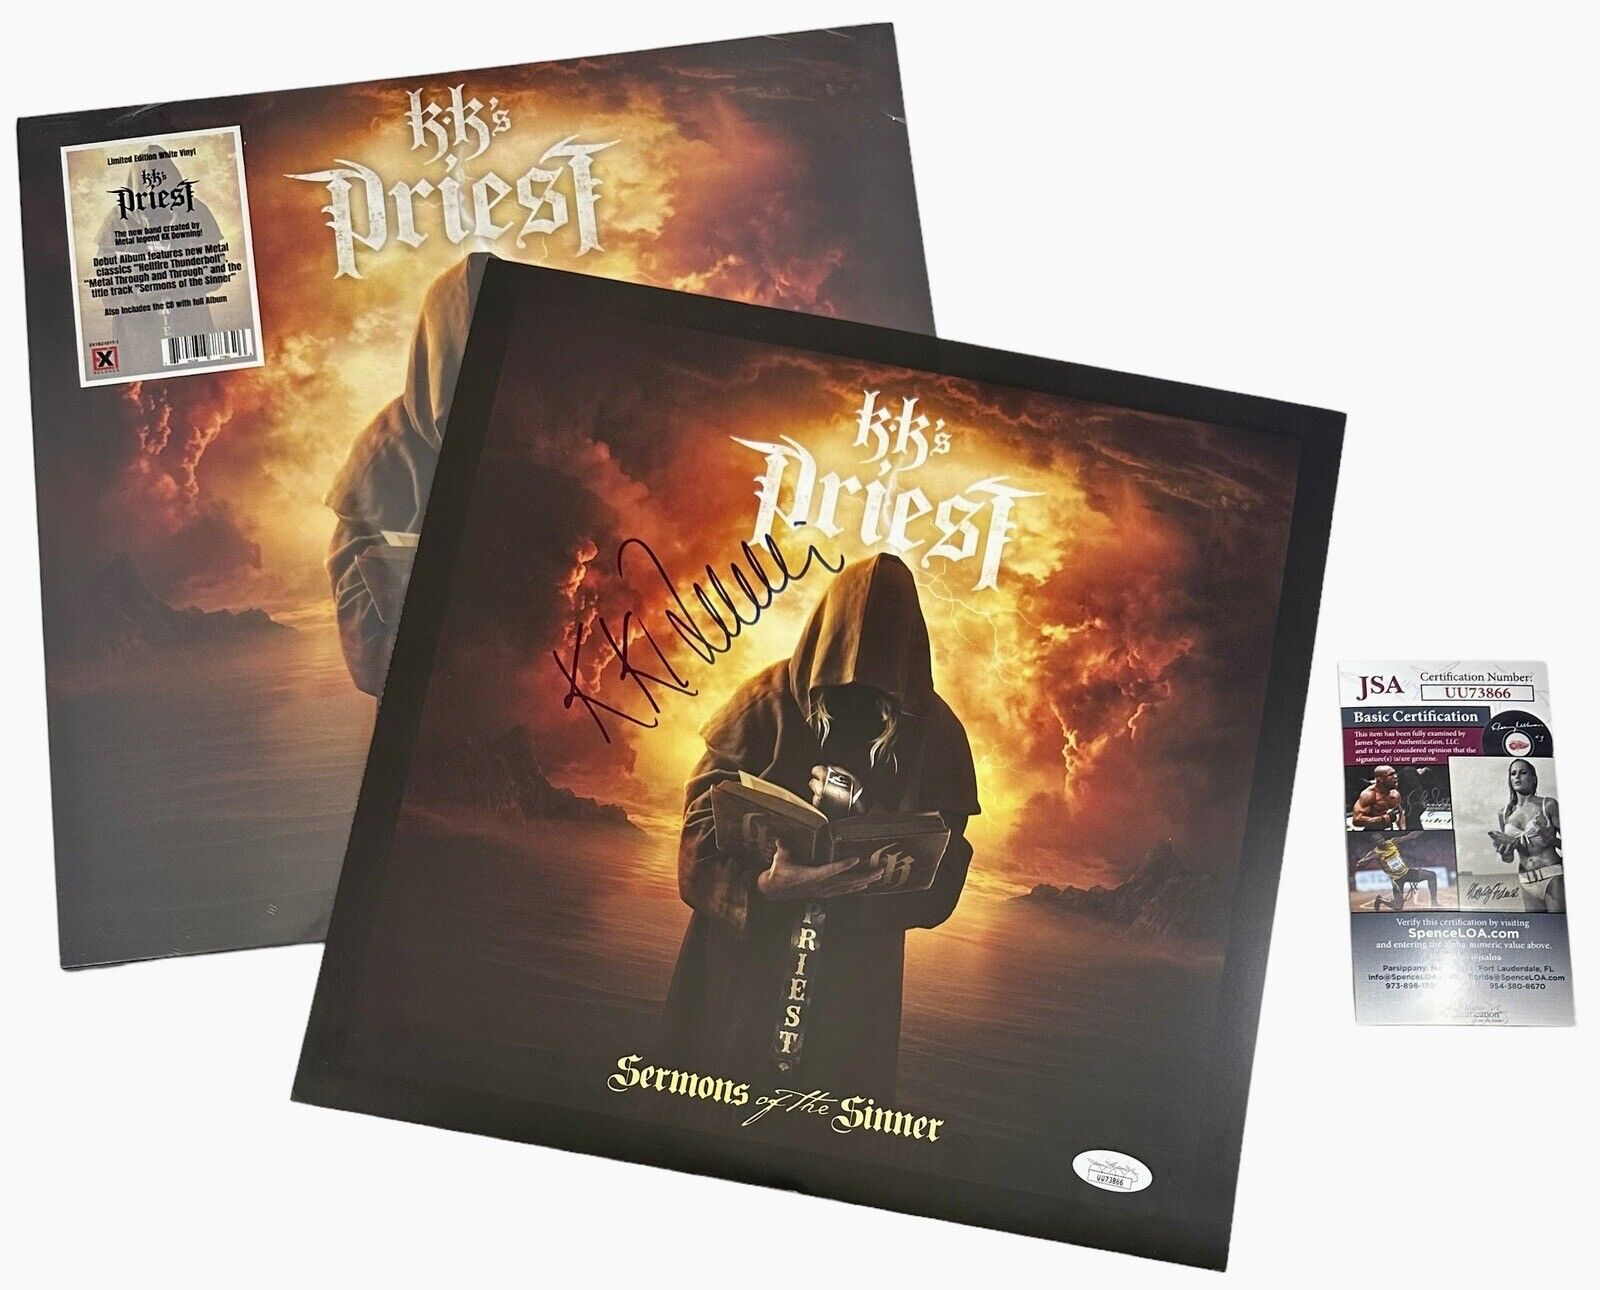 K.K. Downing Signed KK's Priest Sermons Of The Sinner Poster LP Vinyl Album +JSA